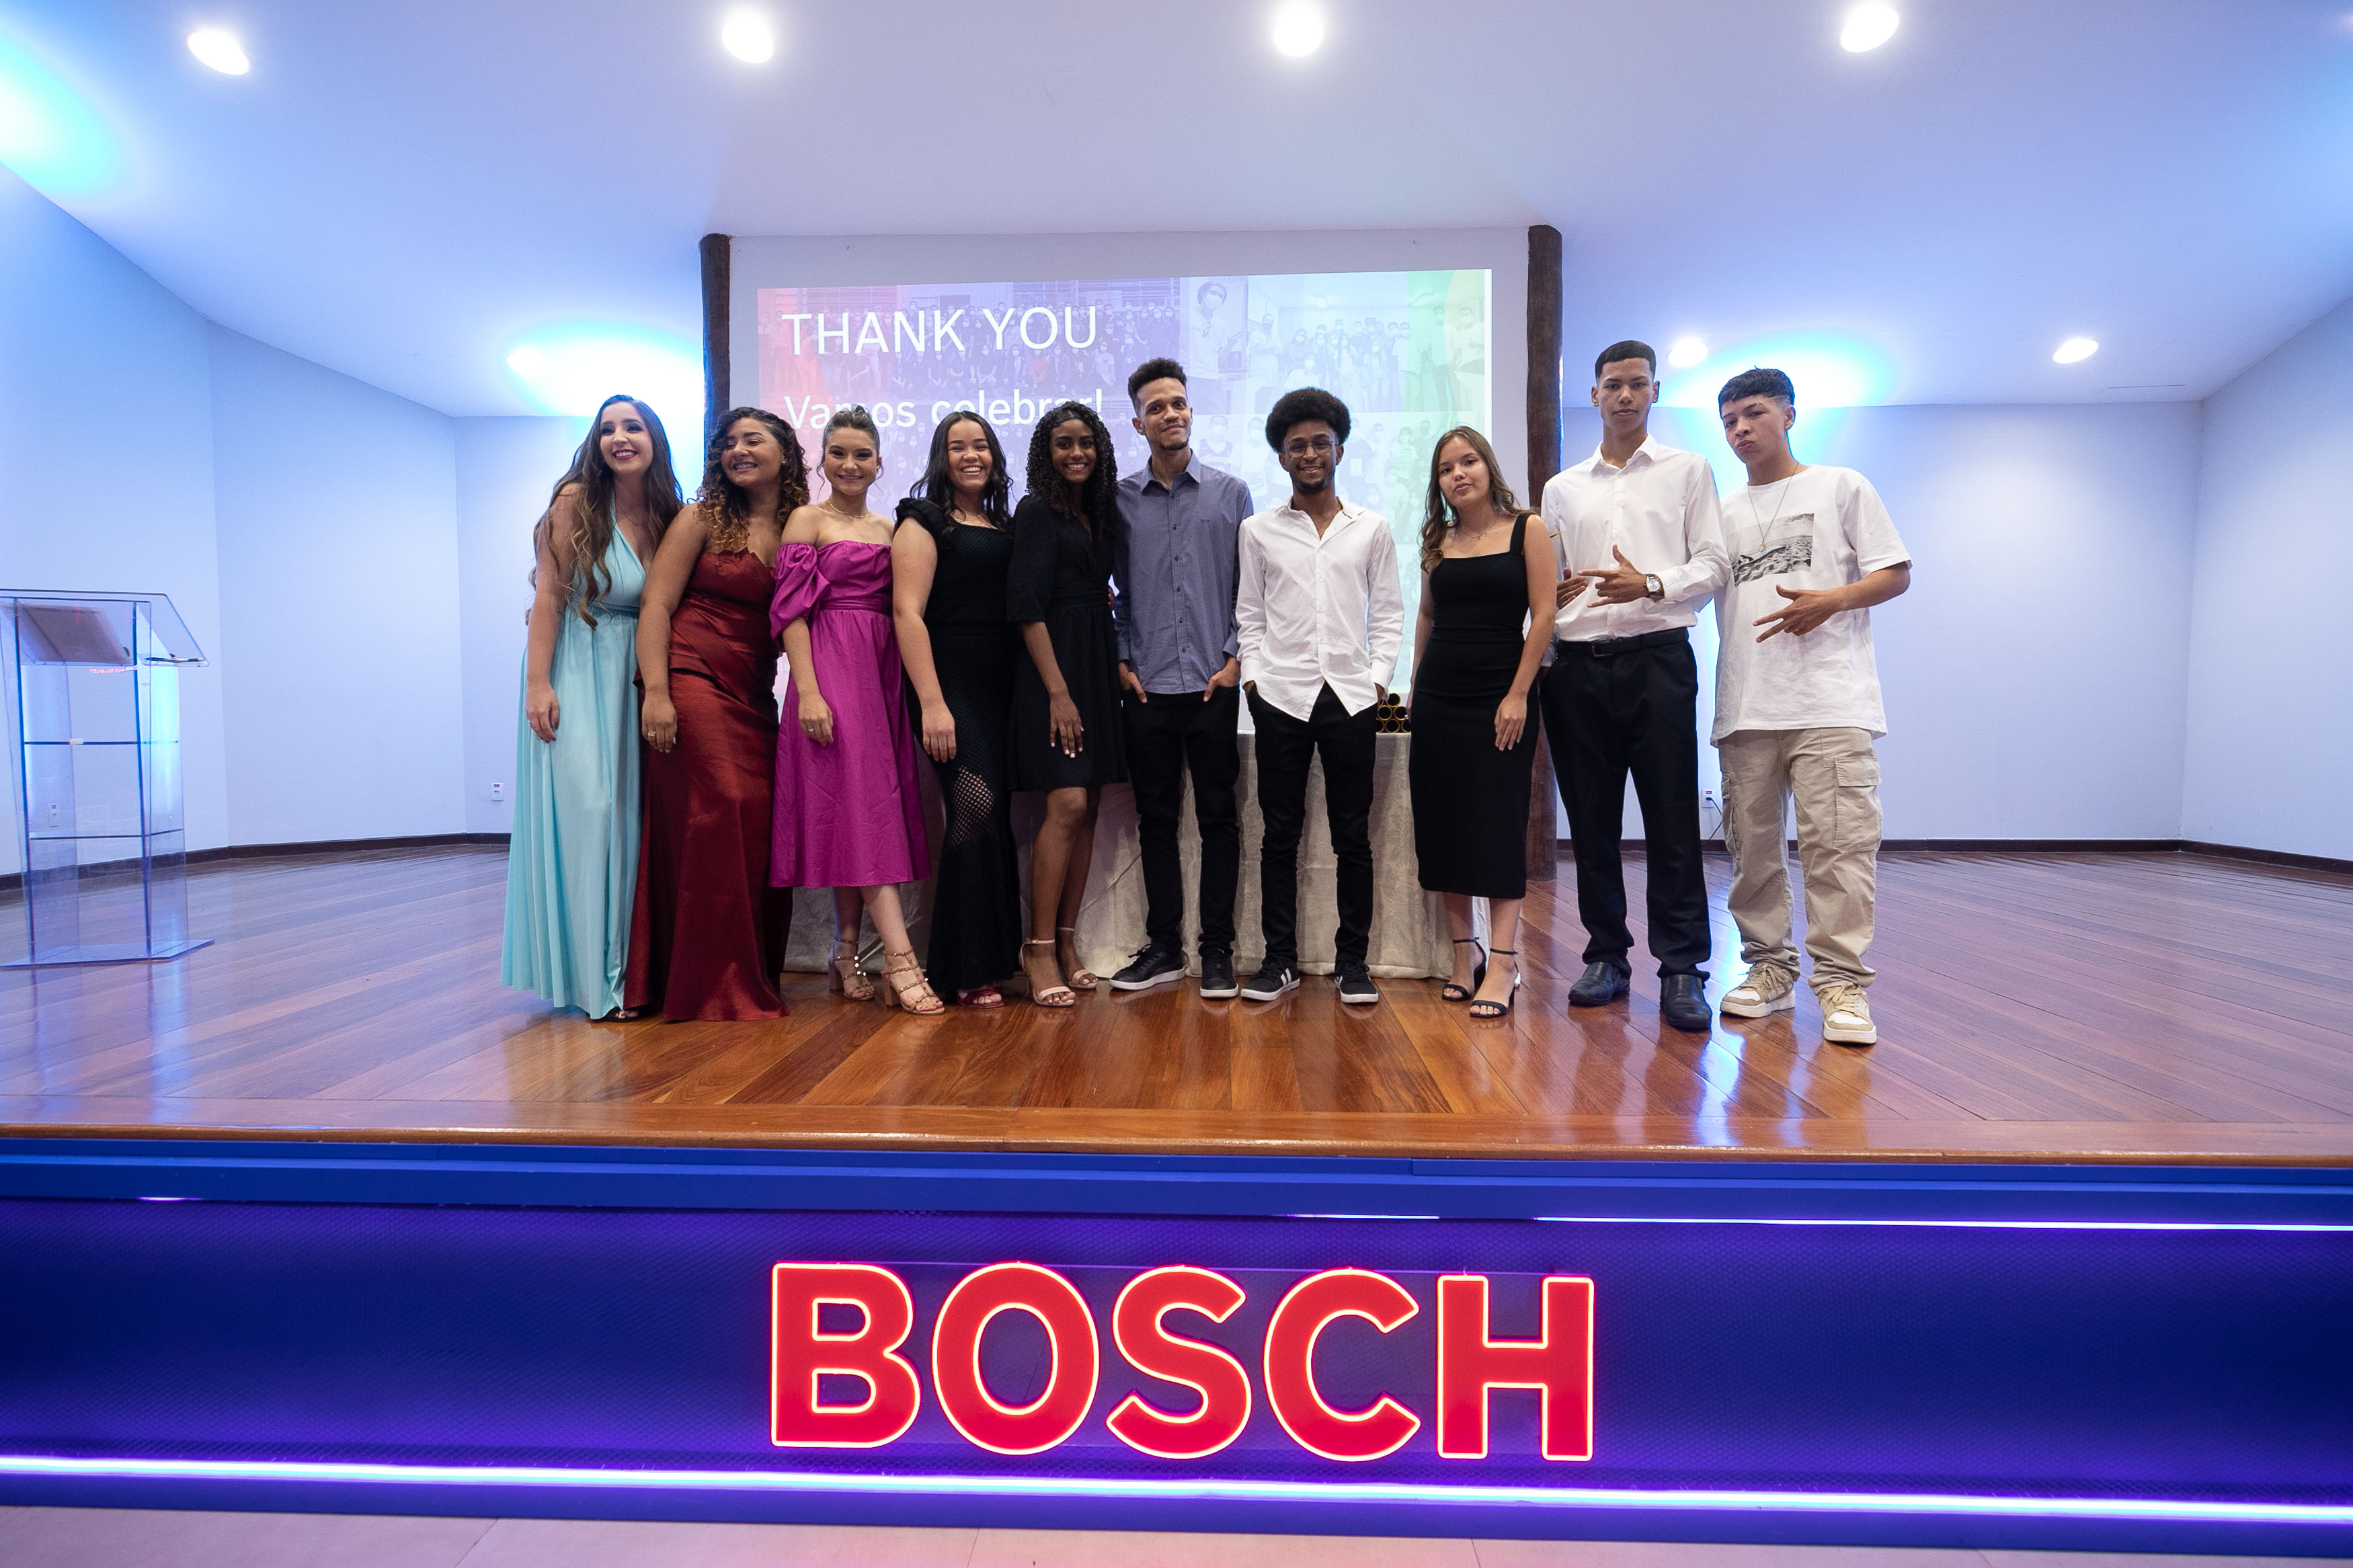 Bosch forma jovens aprendizes com foco em carreira voltada para tecnologia